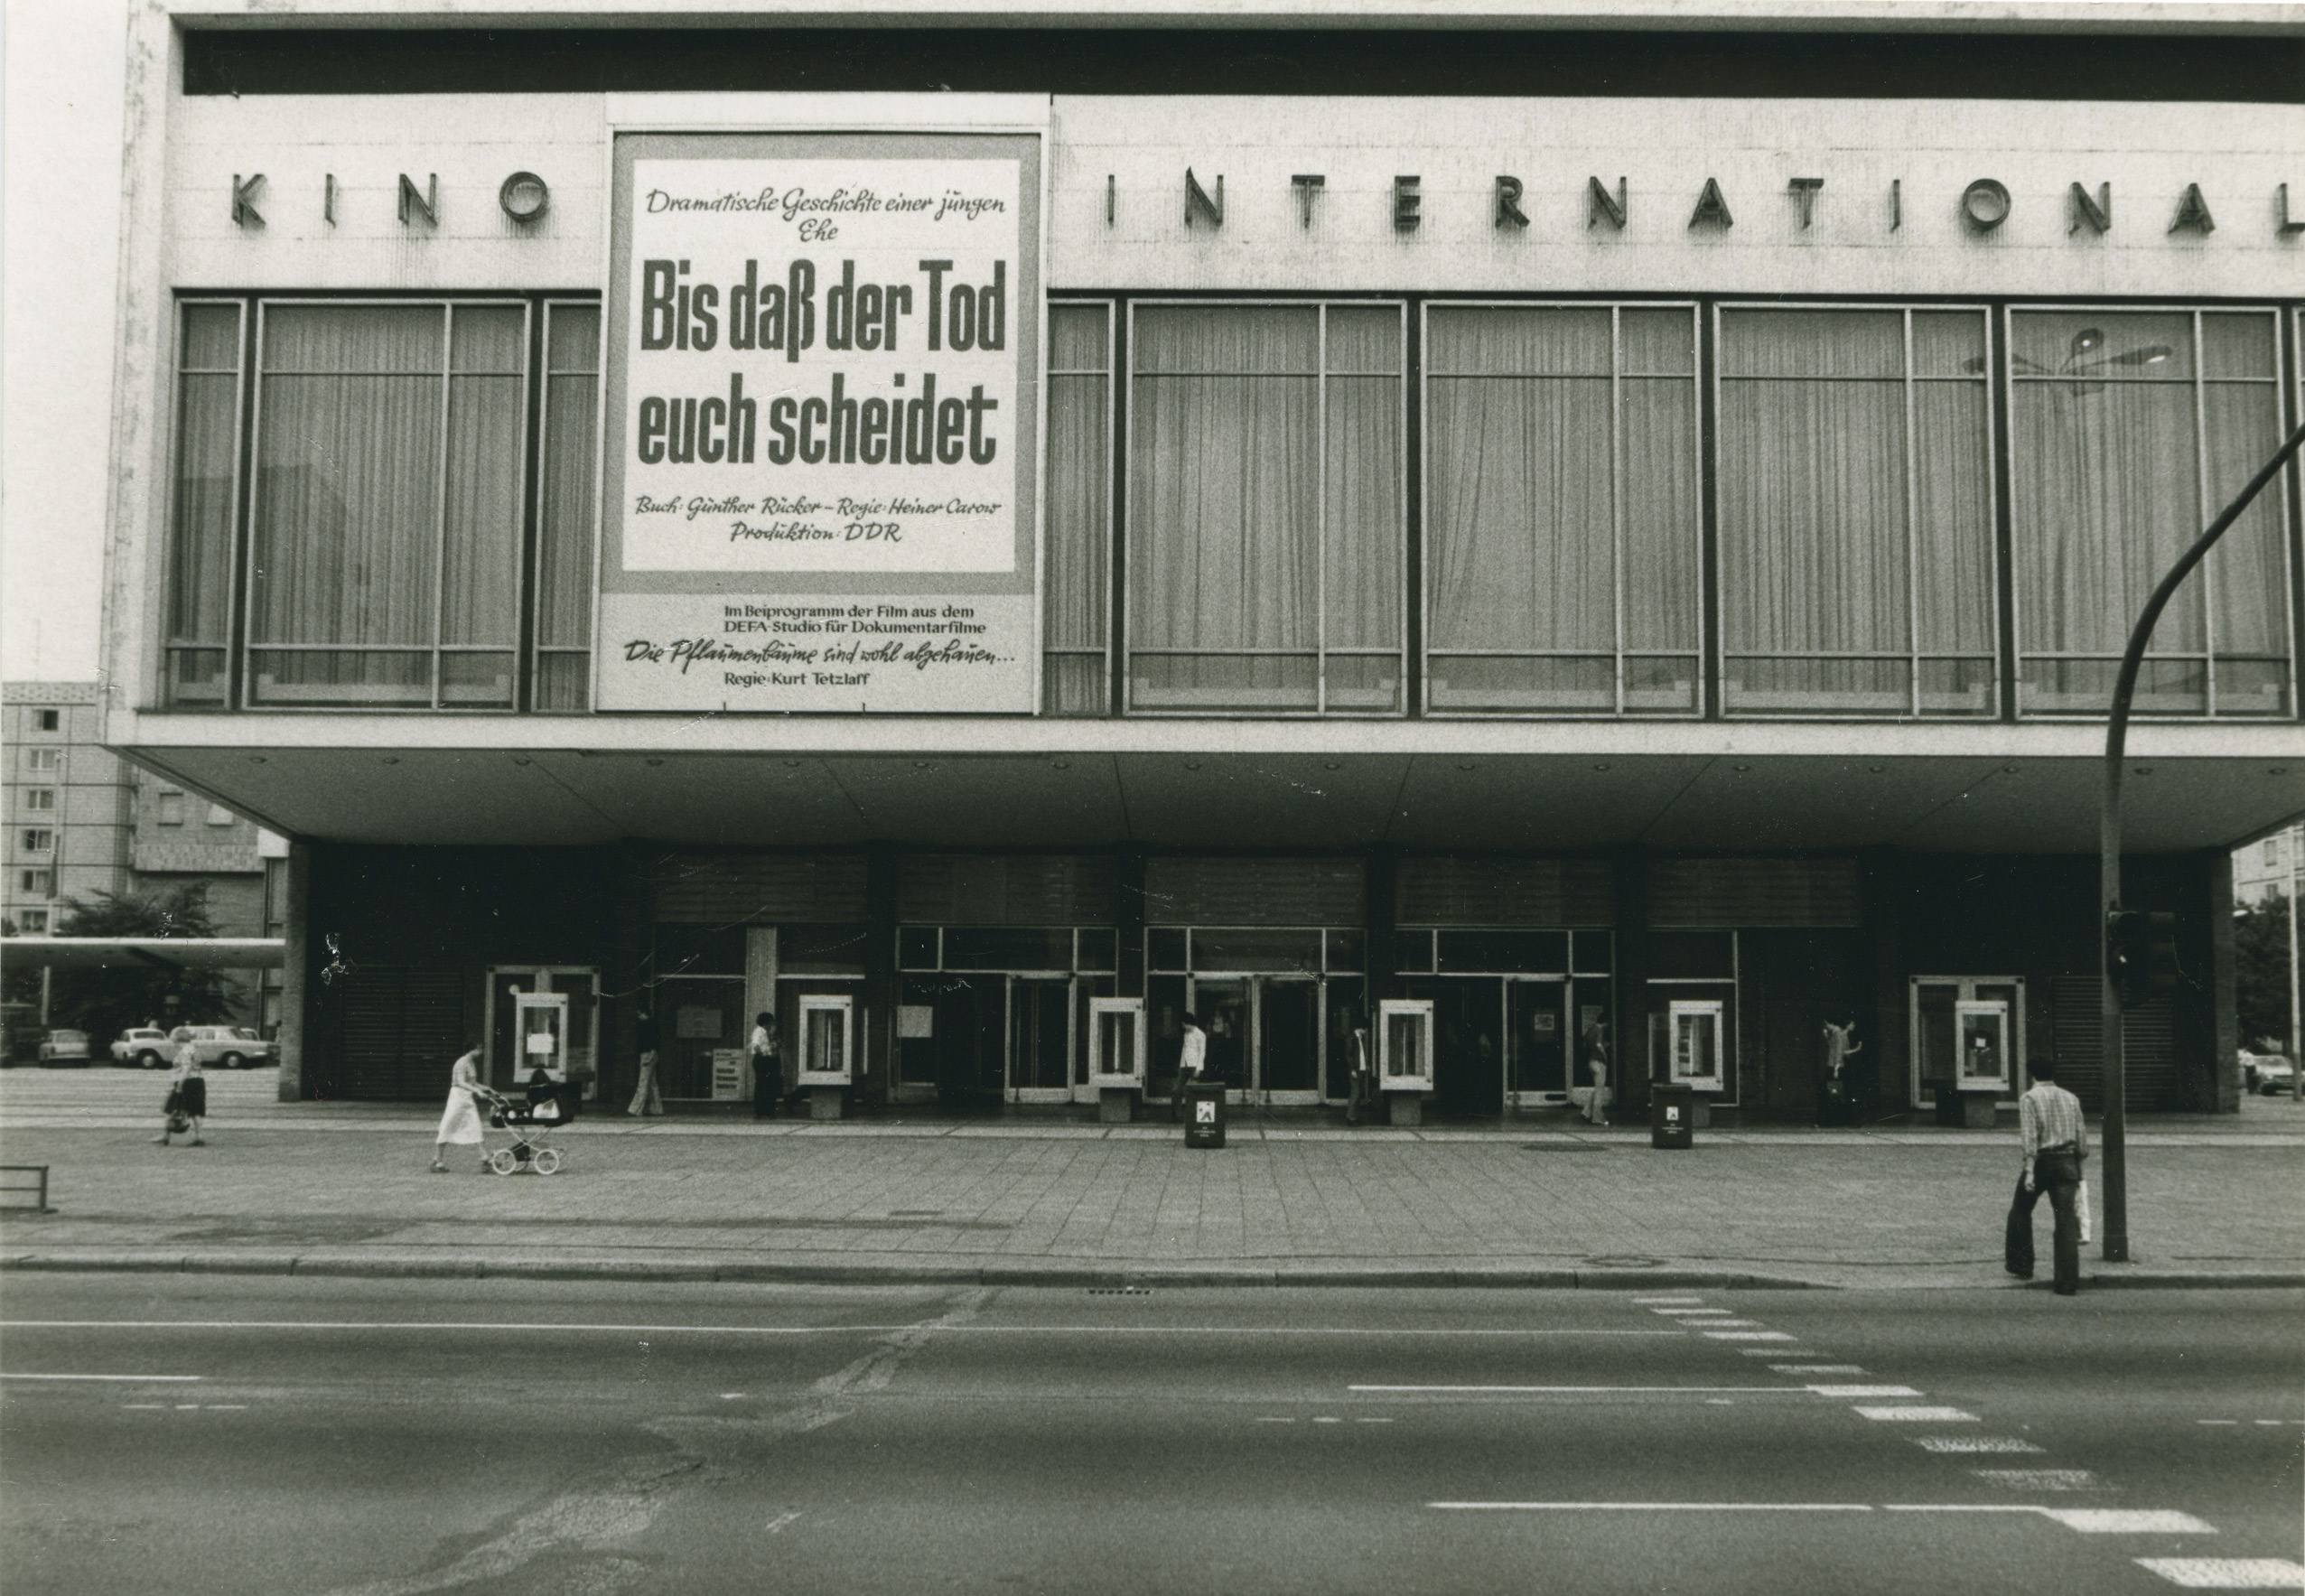 Schwarz-Weiß-Foto: Kinofassade mit Werbung